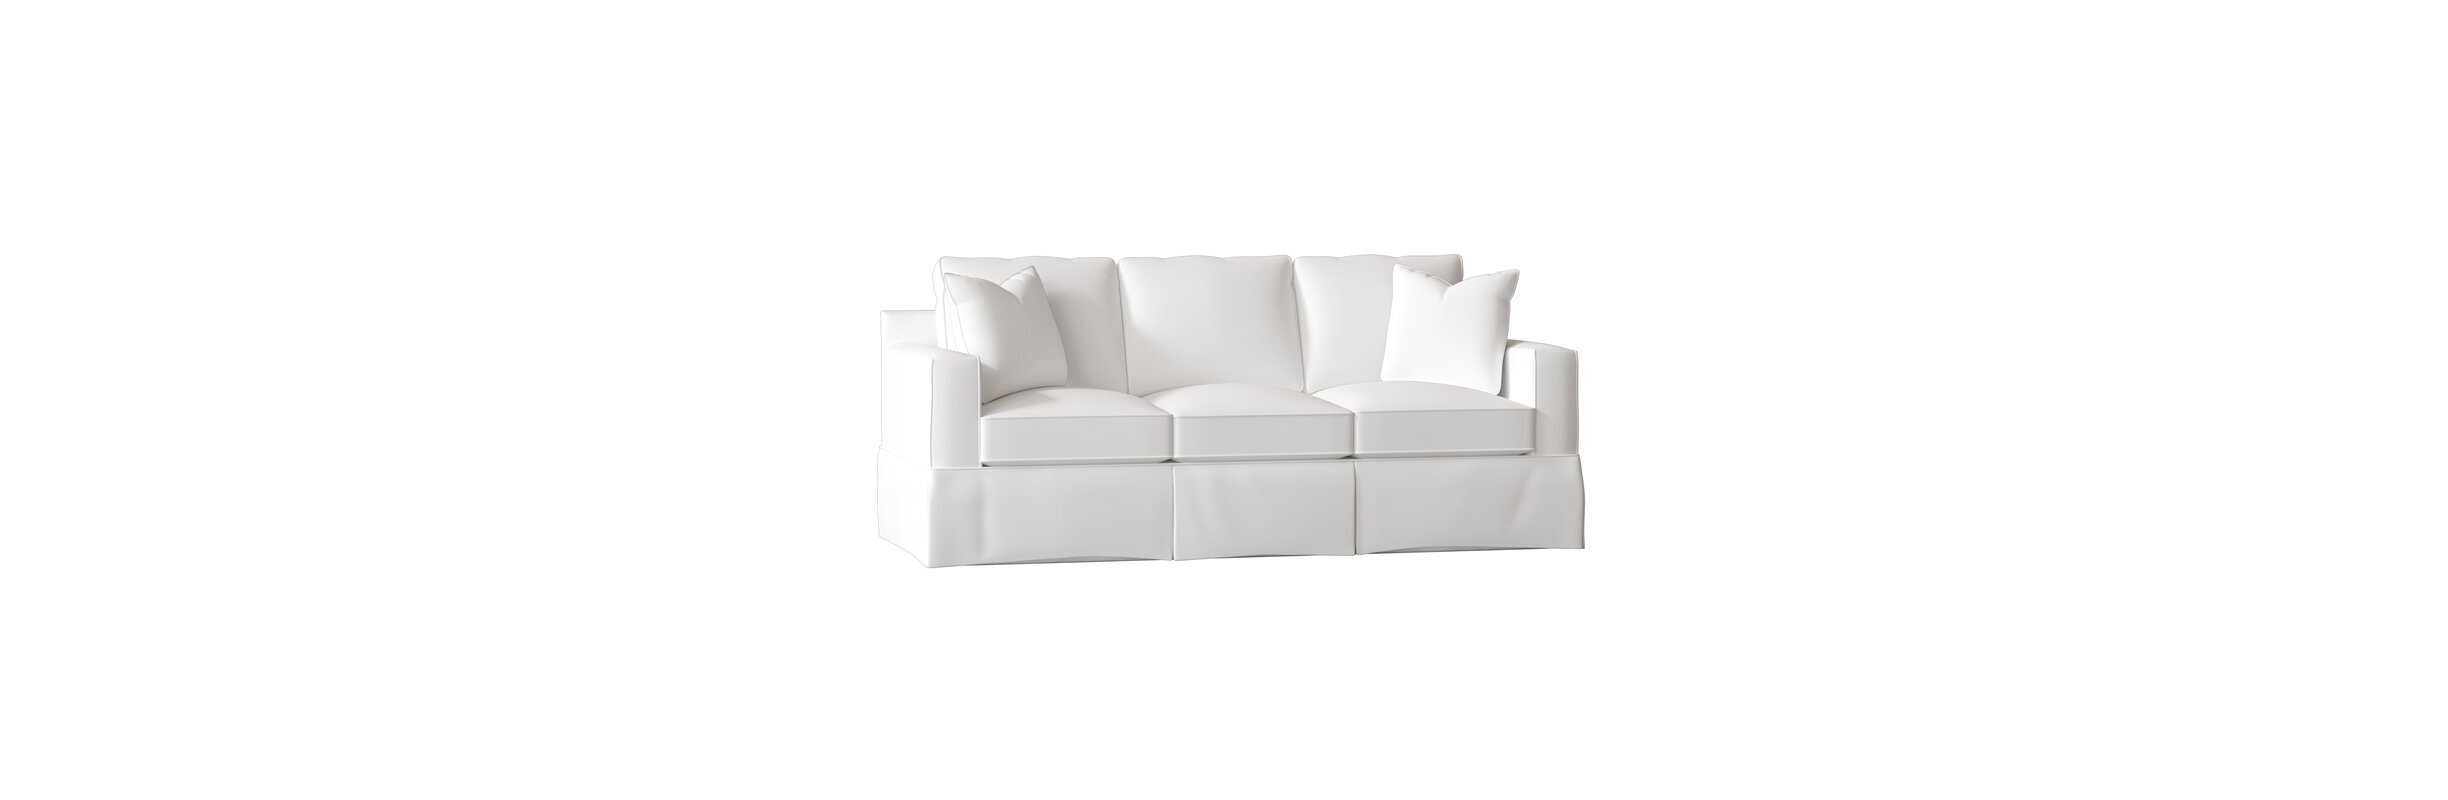 Slipcover Sofa.jpg